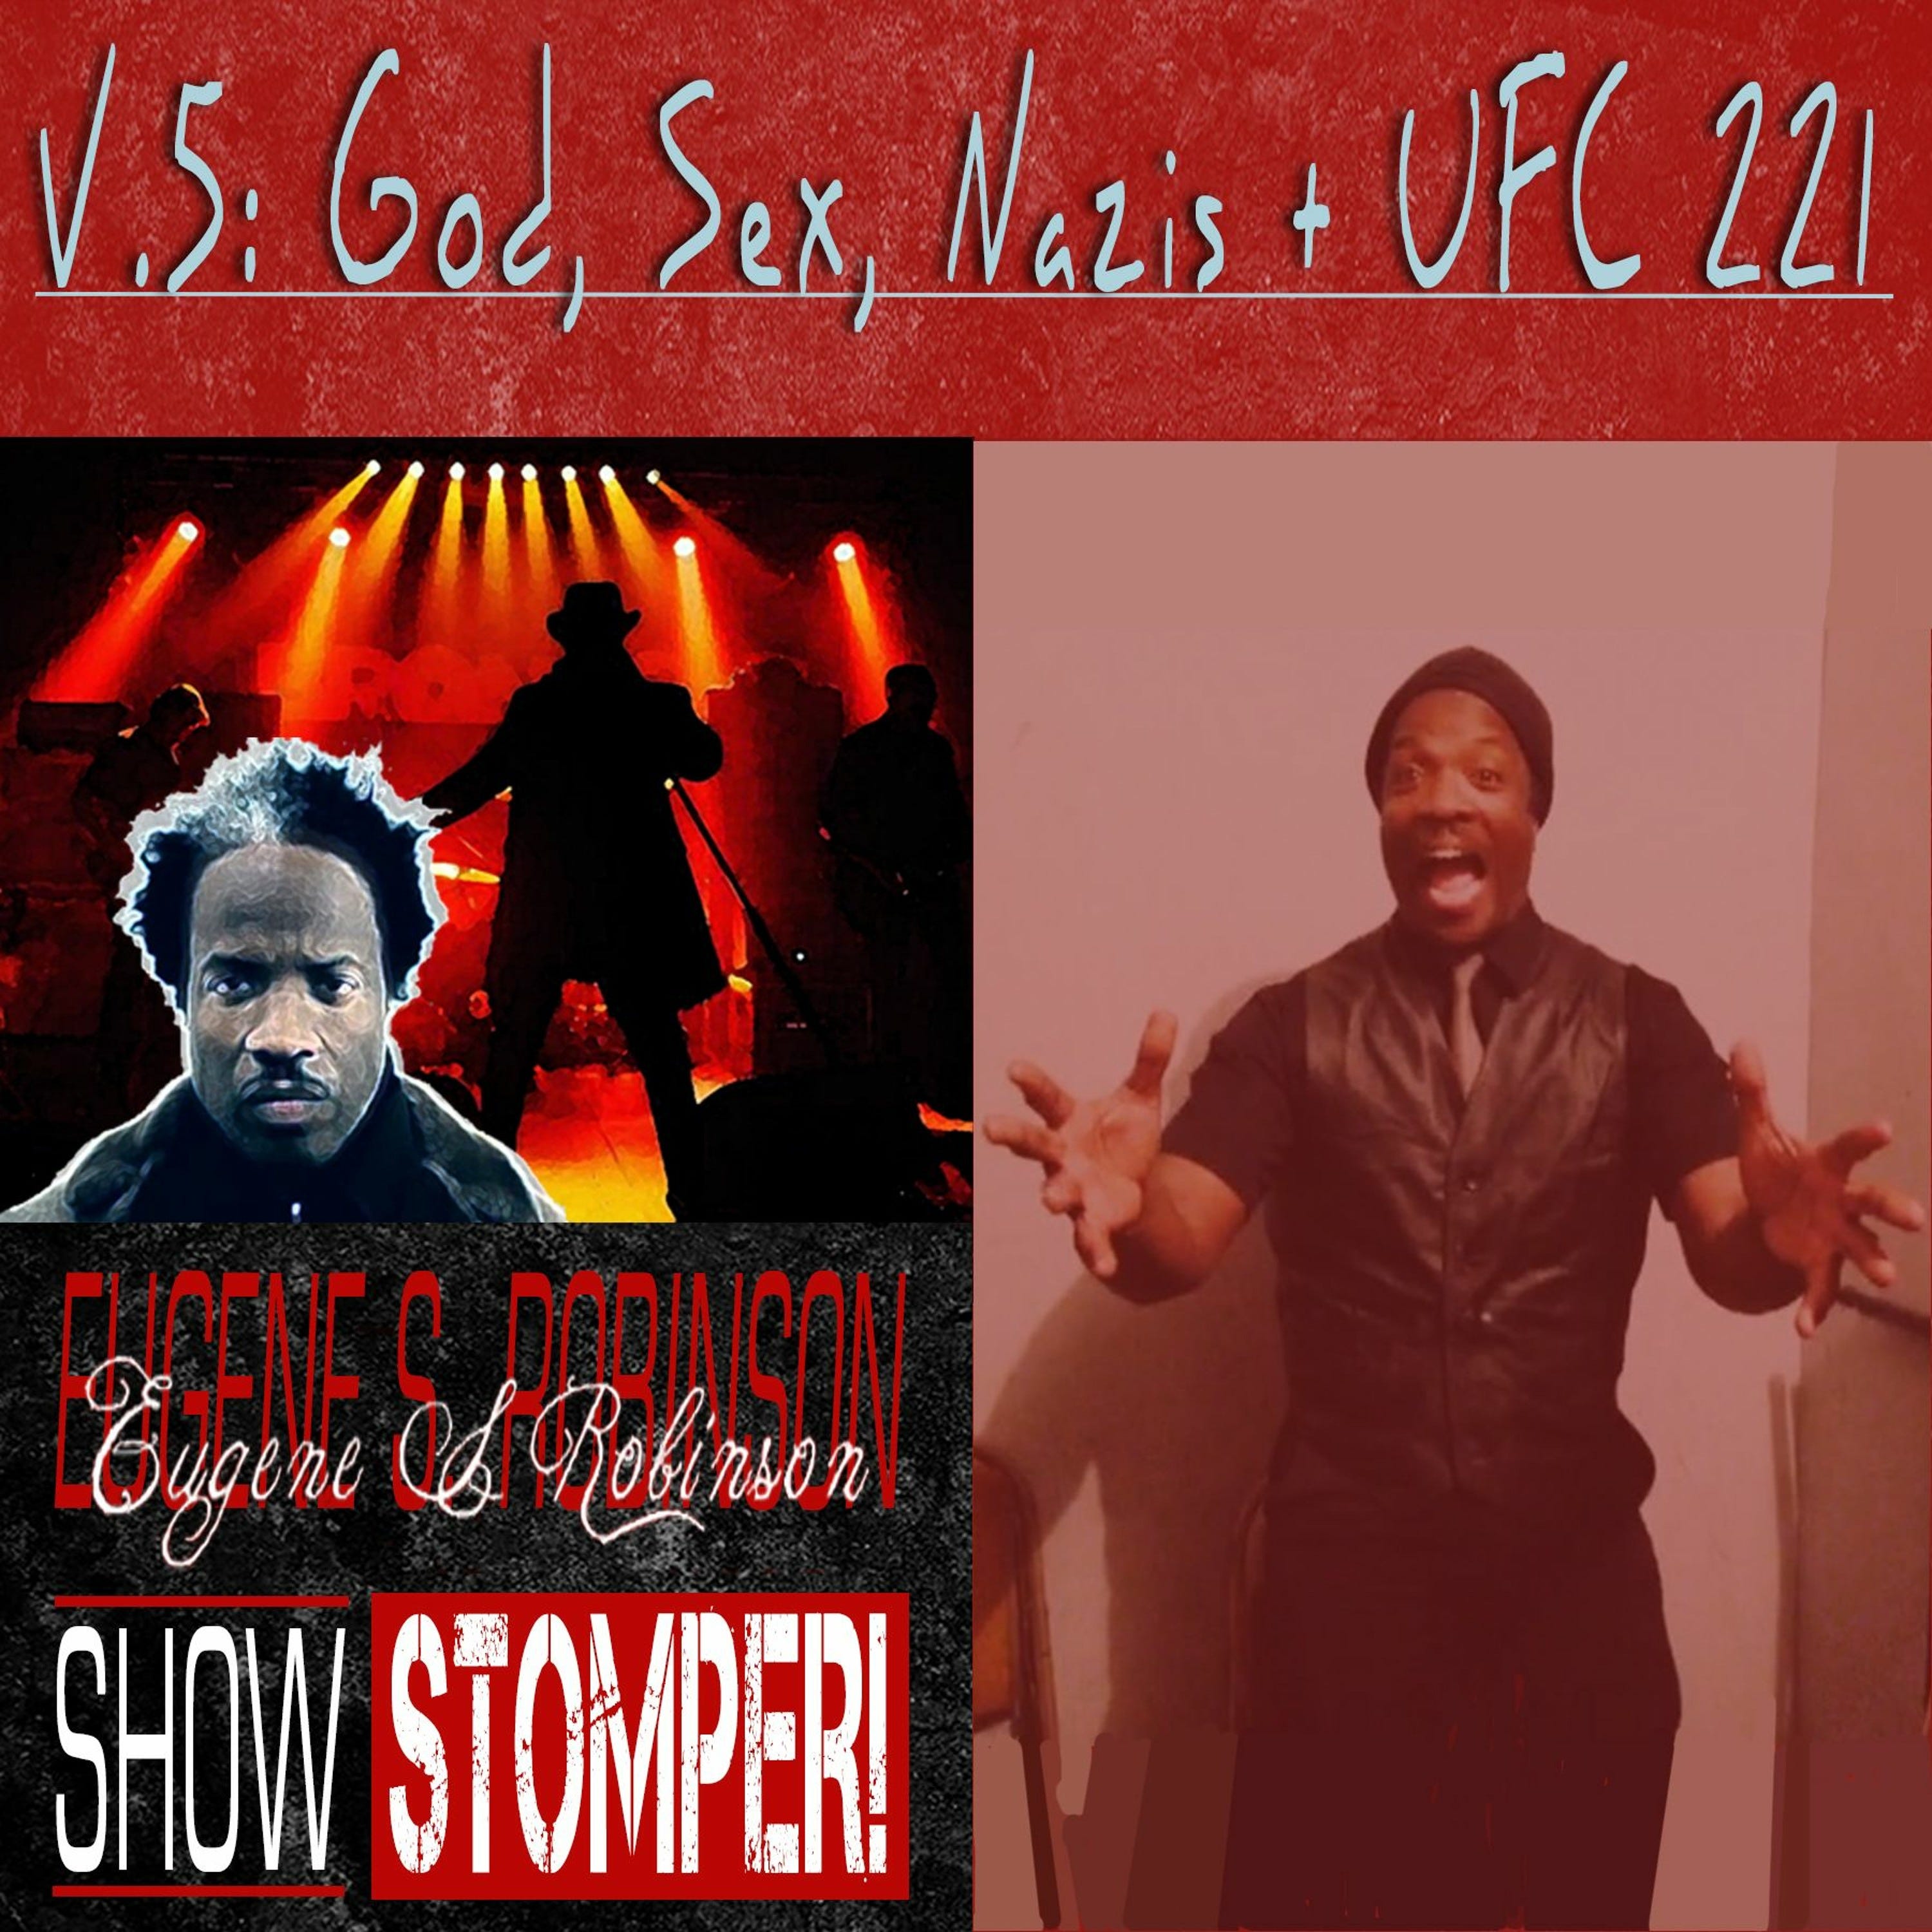 The Eugene S. Robinson Show Stomper! V.5 - God, Sex, Nazis + UFC 221